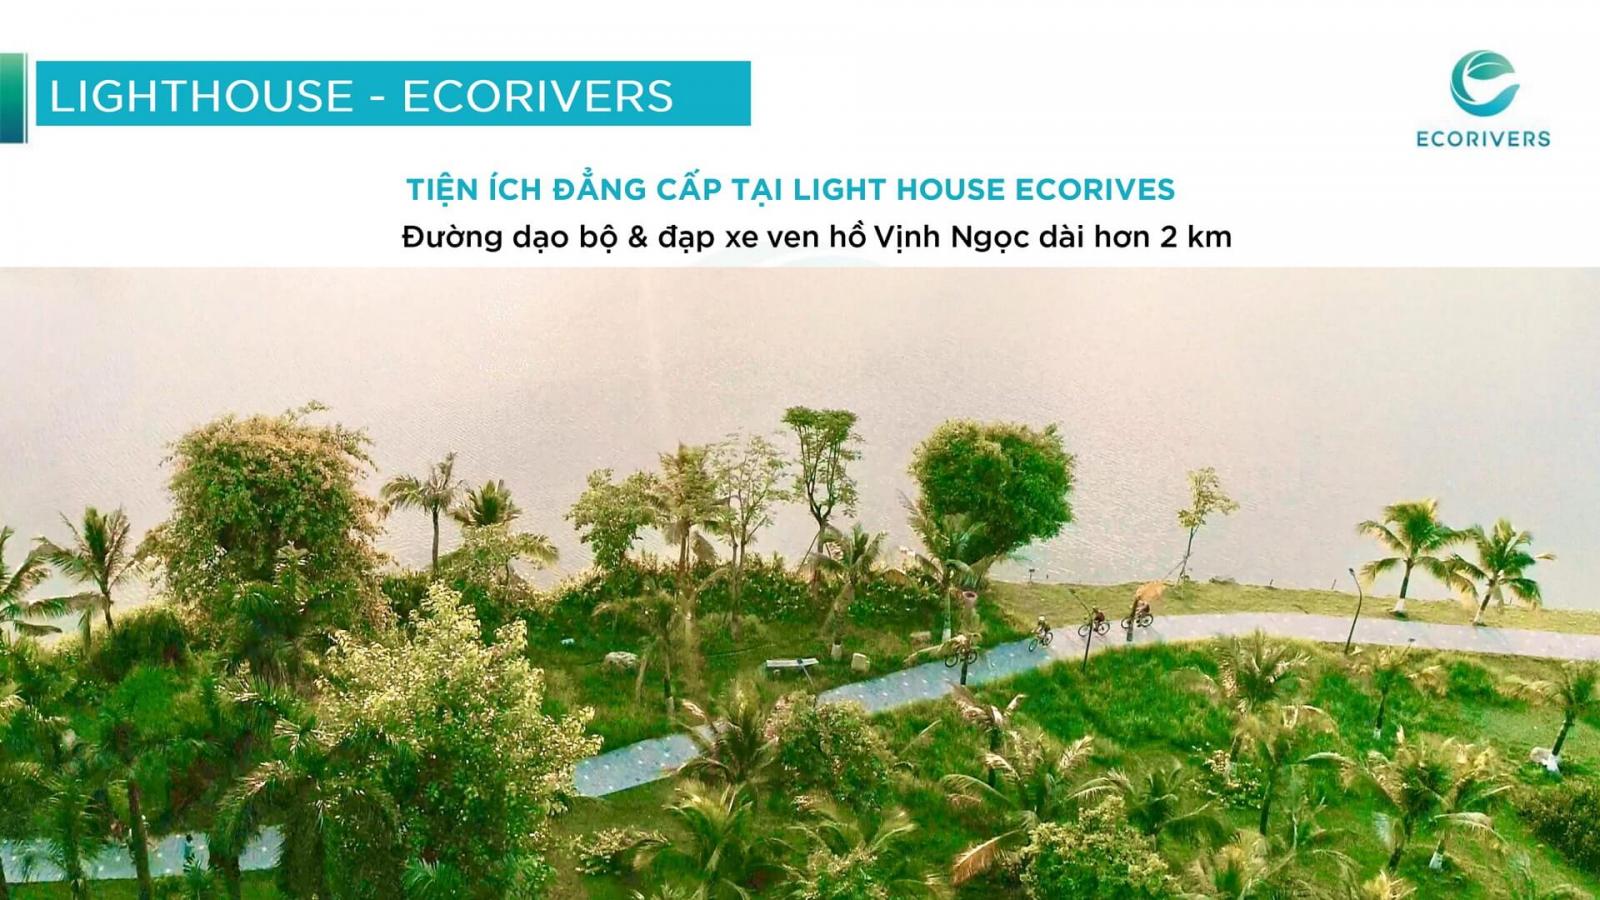 Hình ảnh về Lighthouse Ecorivers